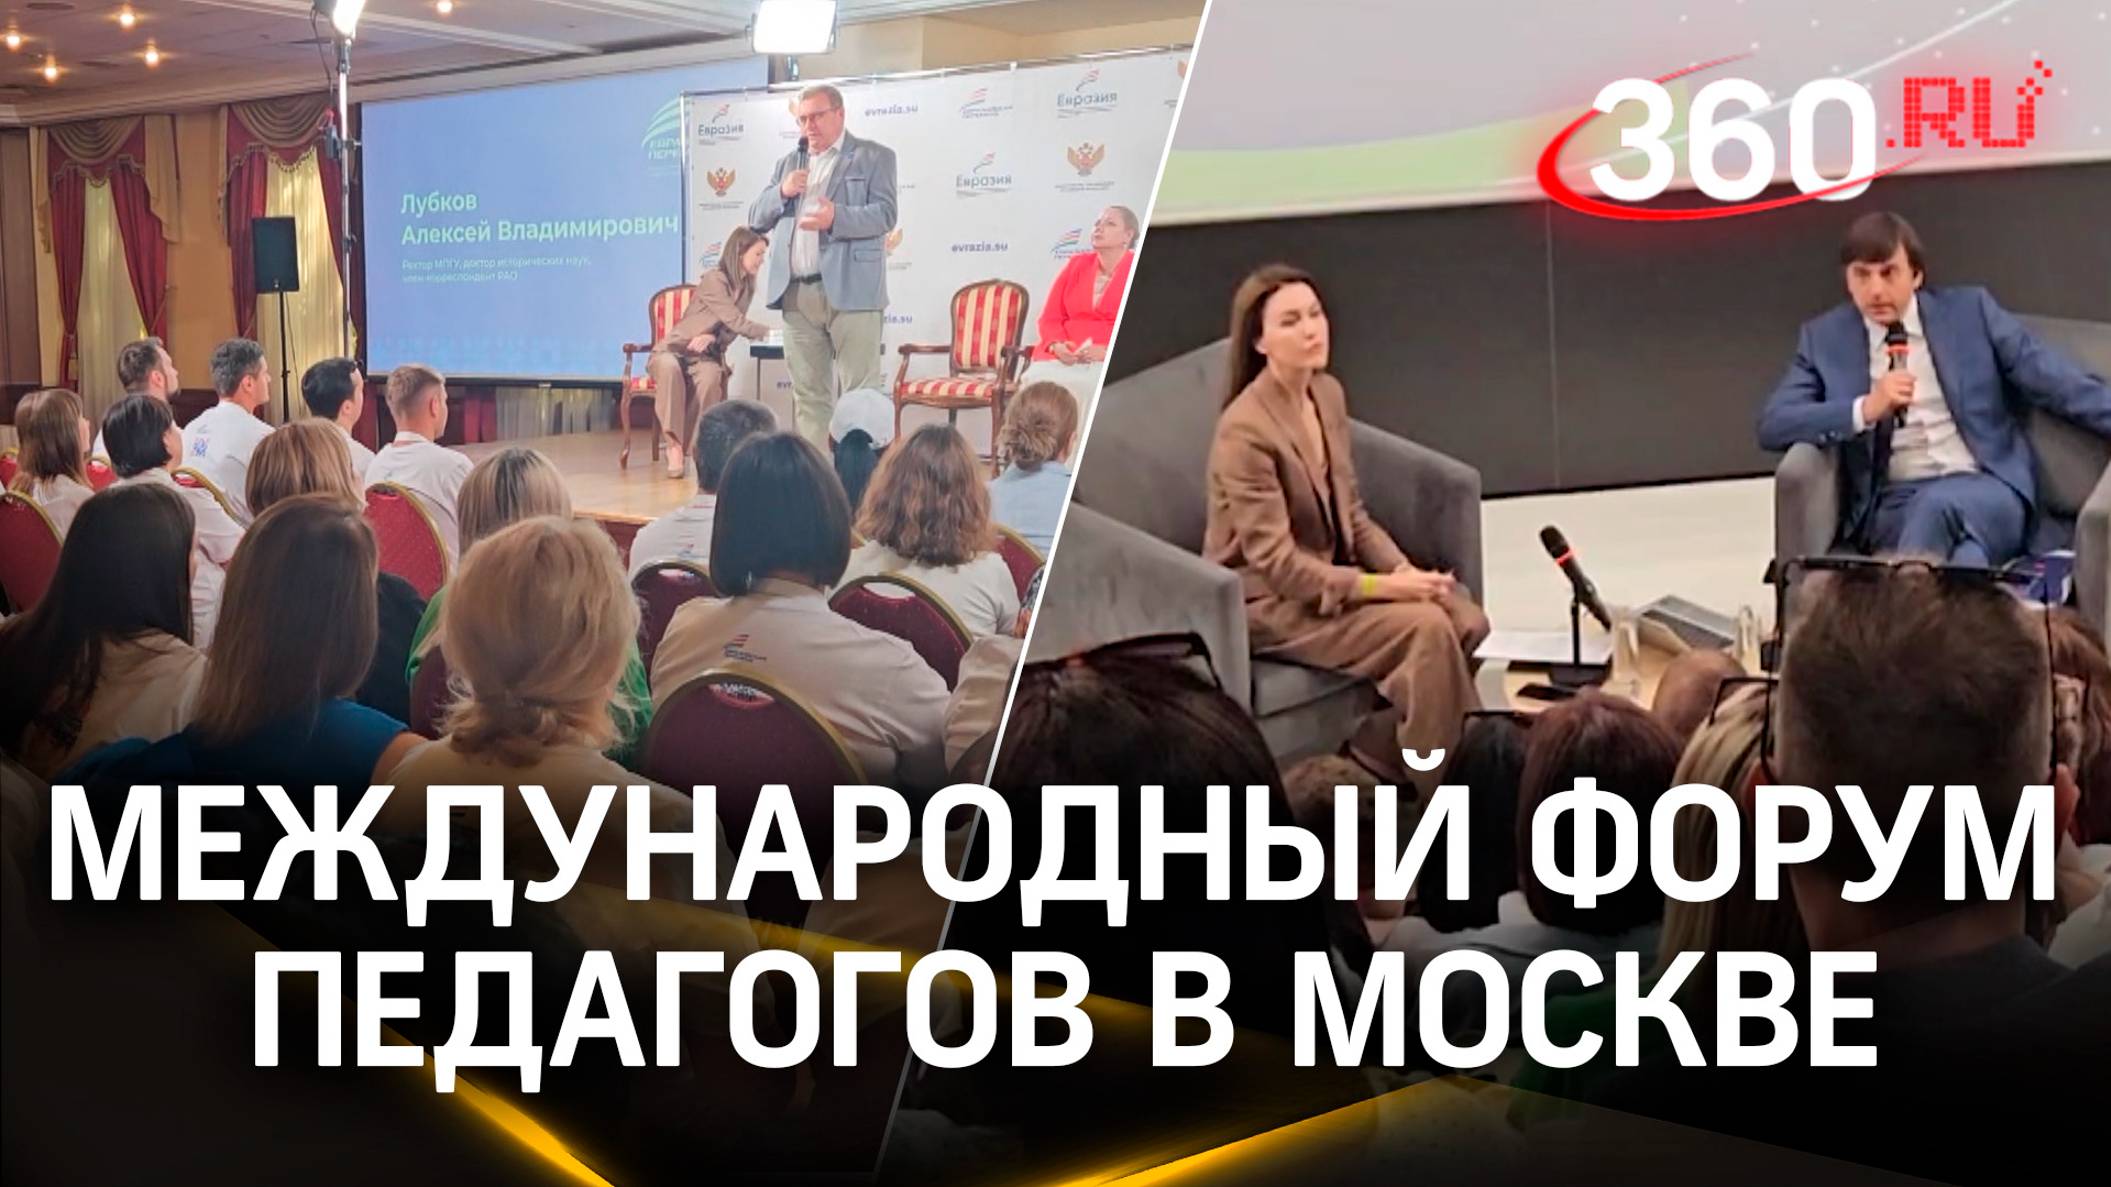 Перспективы образования - что обсуждали на международном форуме педагогов в Москве